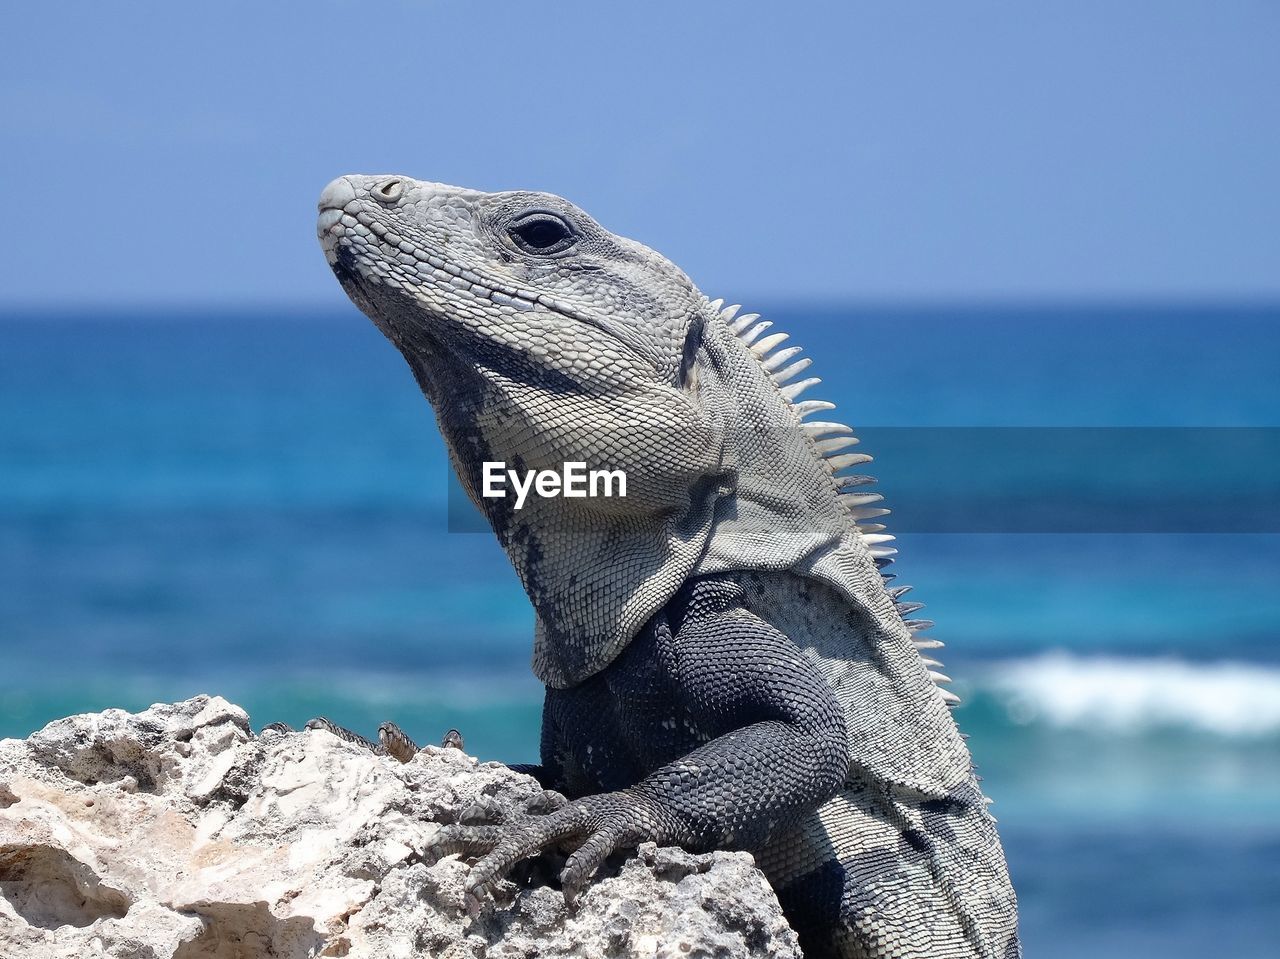 Close-up of marine iguana on rock against sea